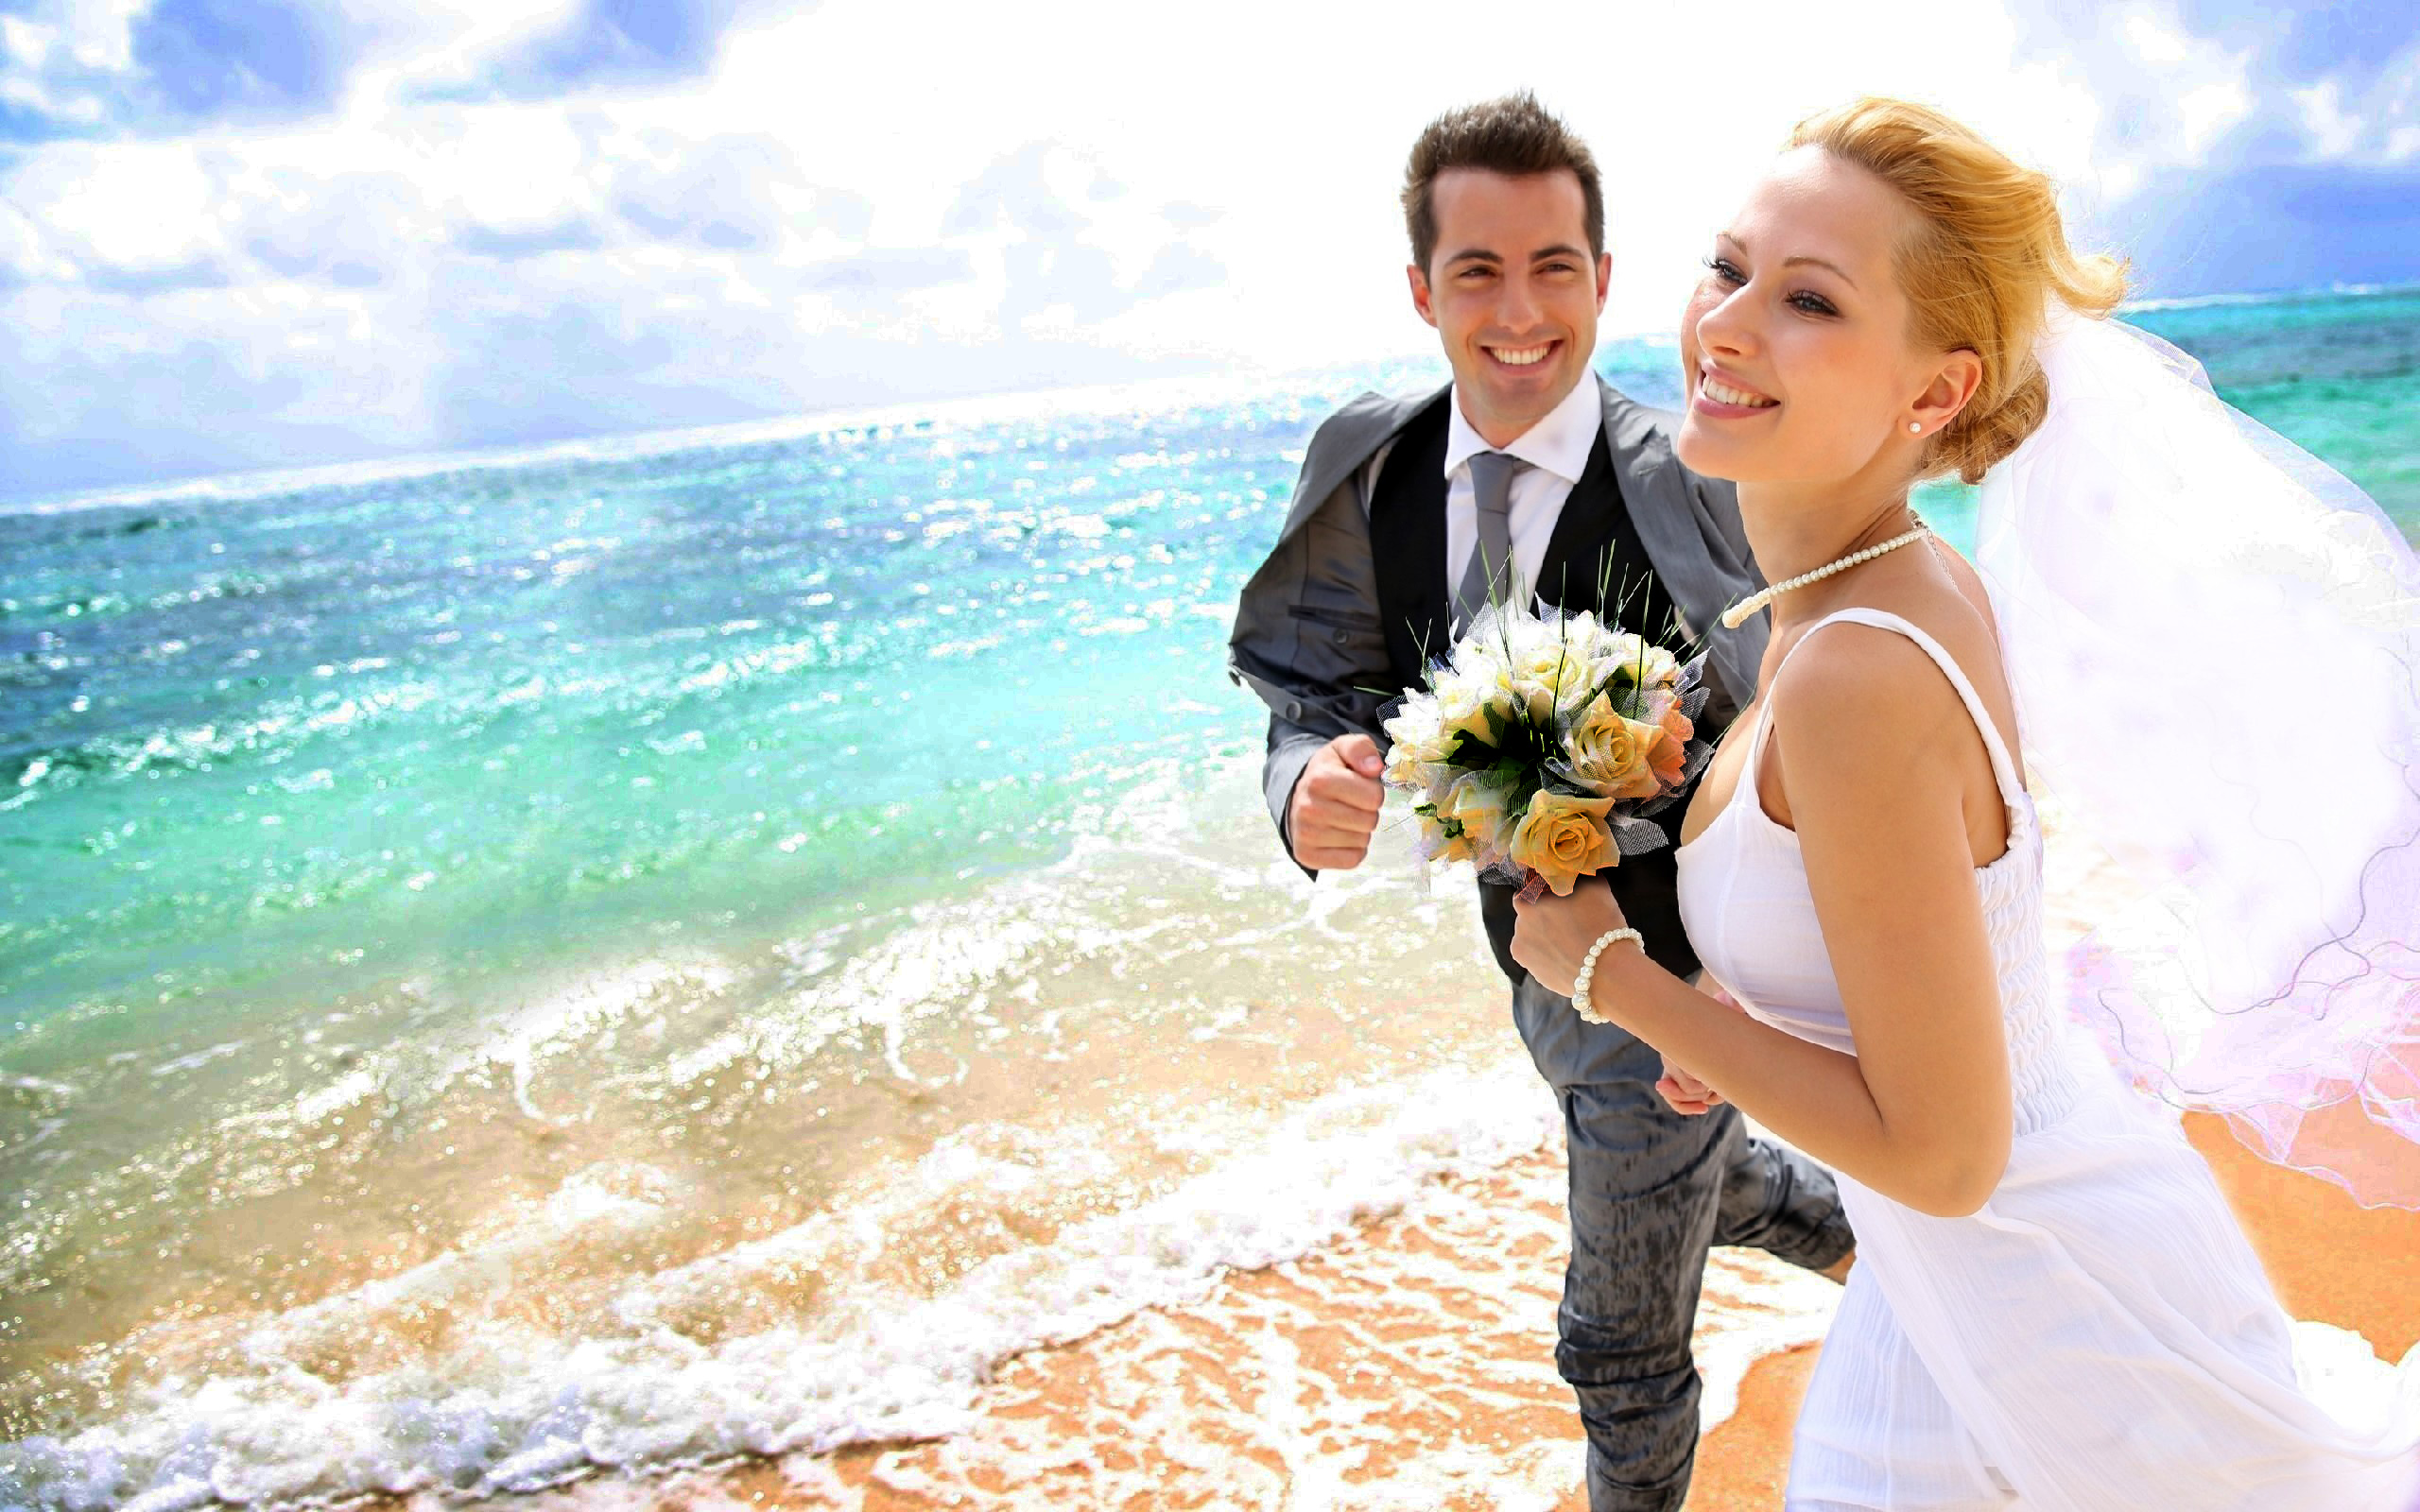 http://wallpapers13.com/wp-content/uploads/2015/11/Man-Woman-Wedding-Photos-sea-beach-love-couple-HD-Wallpaper-2560x1600.jpg